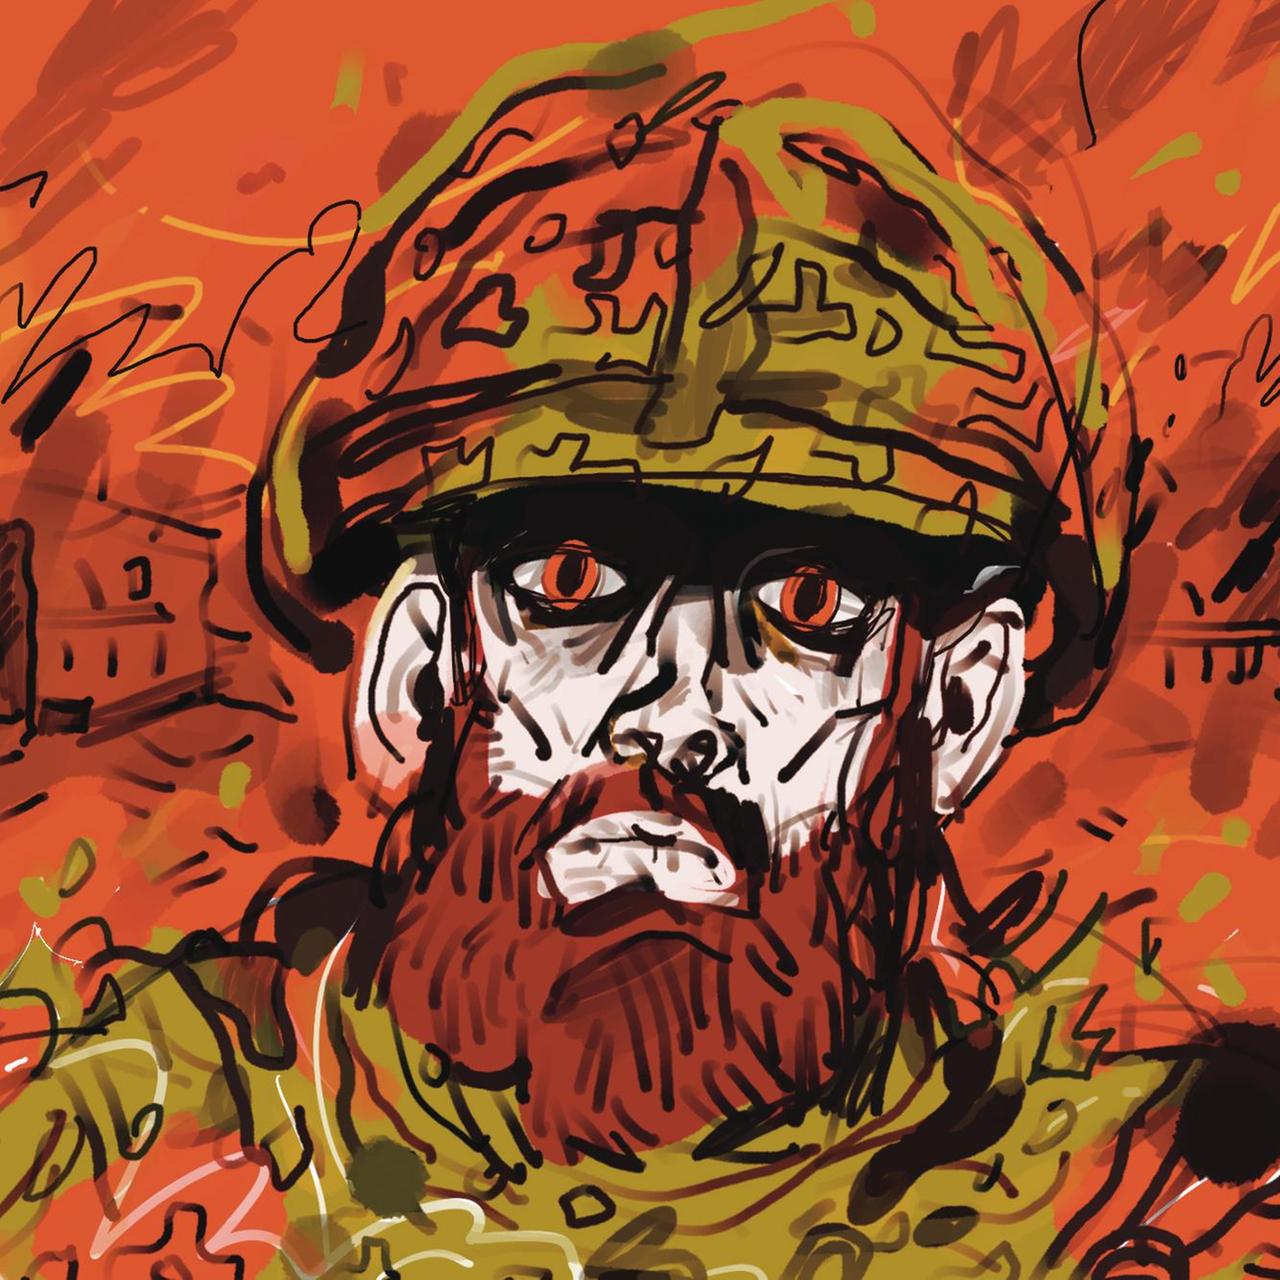 Comics aus der Ukraine – Zeichnend den Krieg verarbeiten (Podcast)